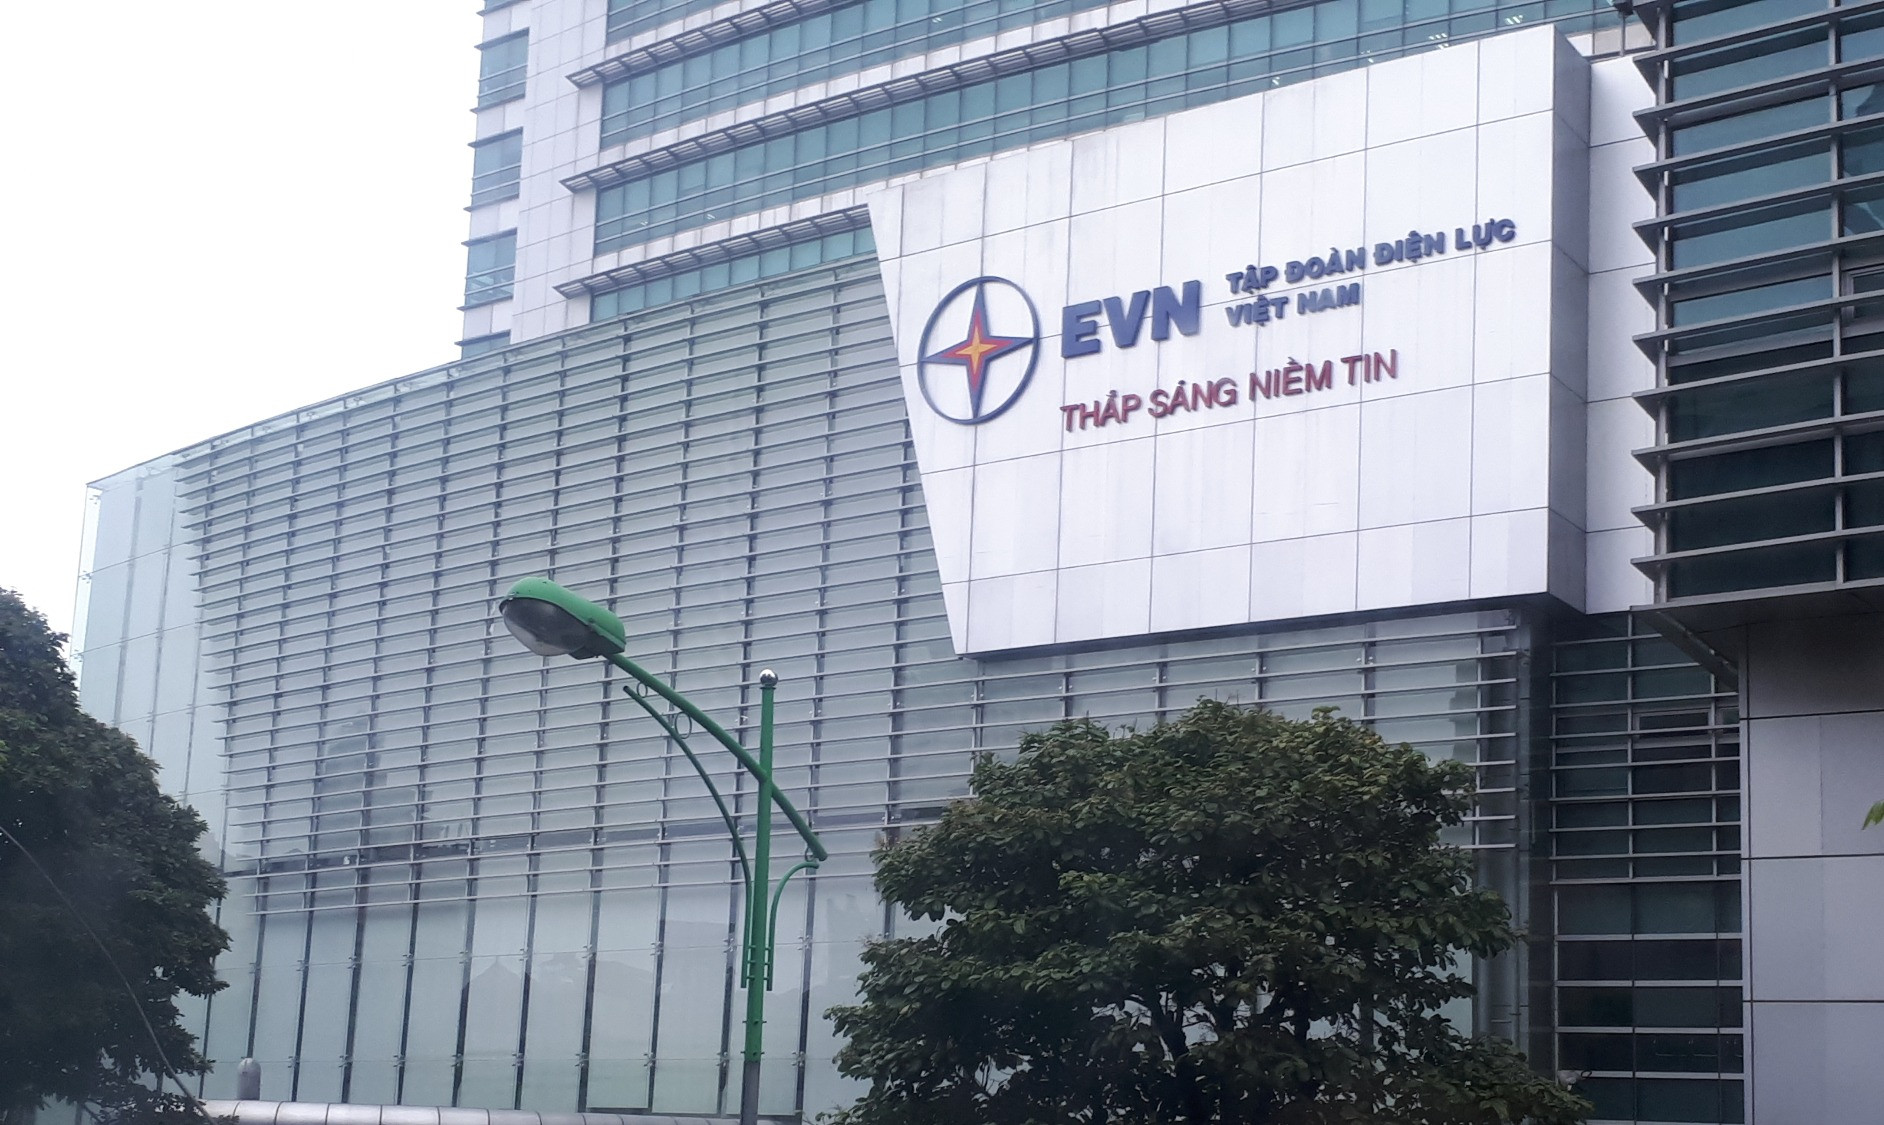 Tập đoàn Điện lực Việt Nam (EVN) là công ty gì? Trụ sở ở đâu?